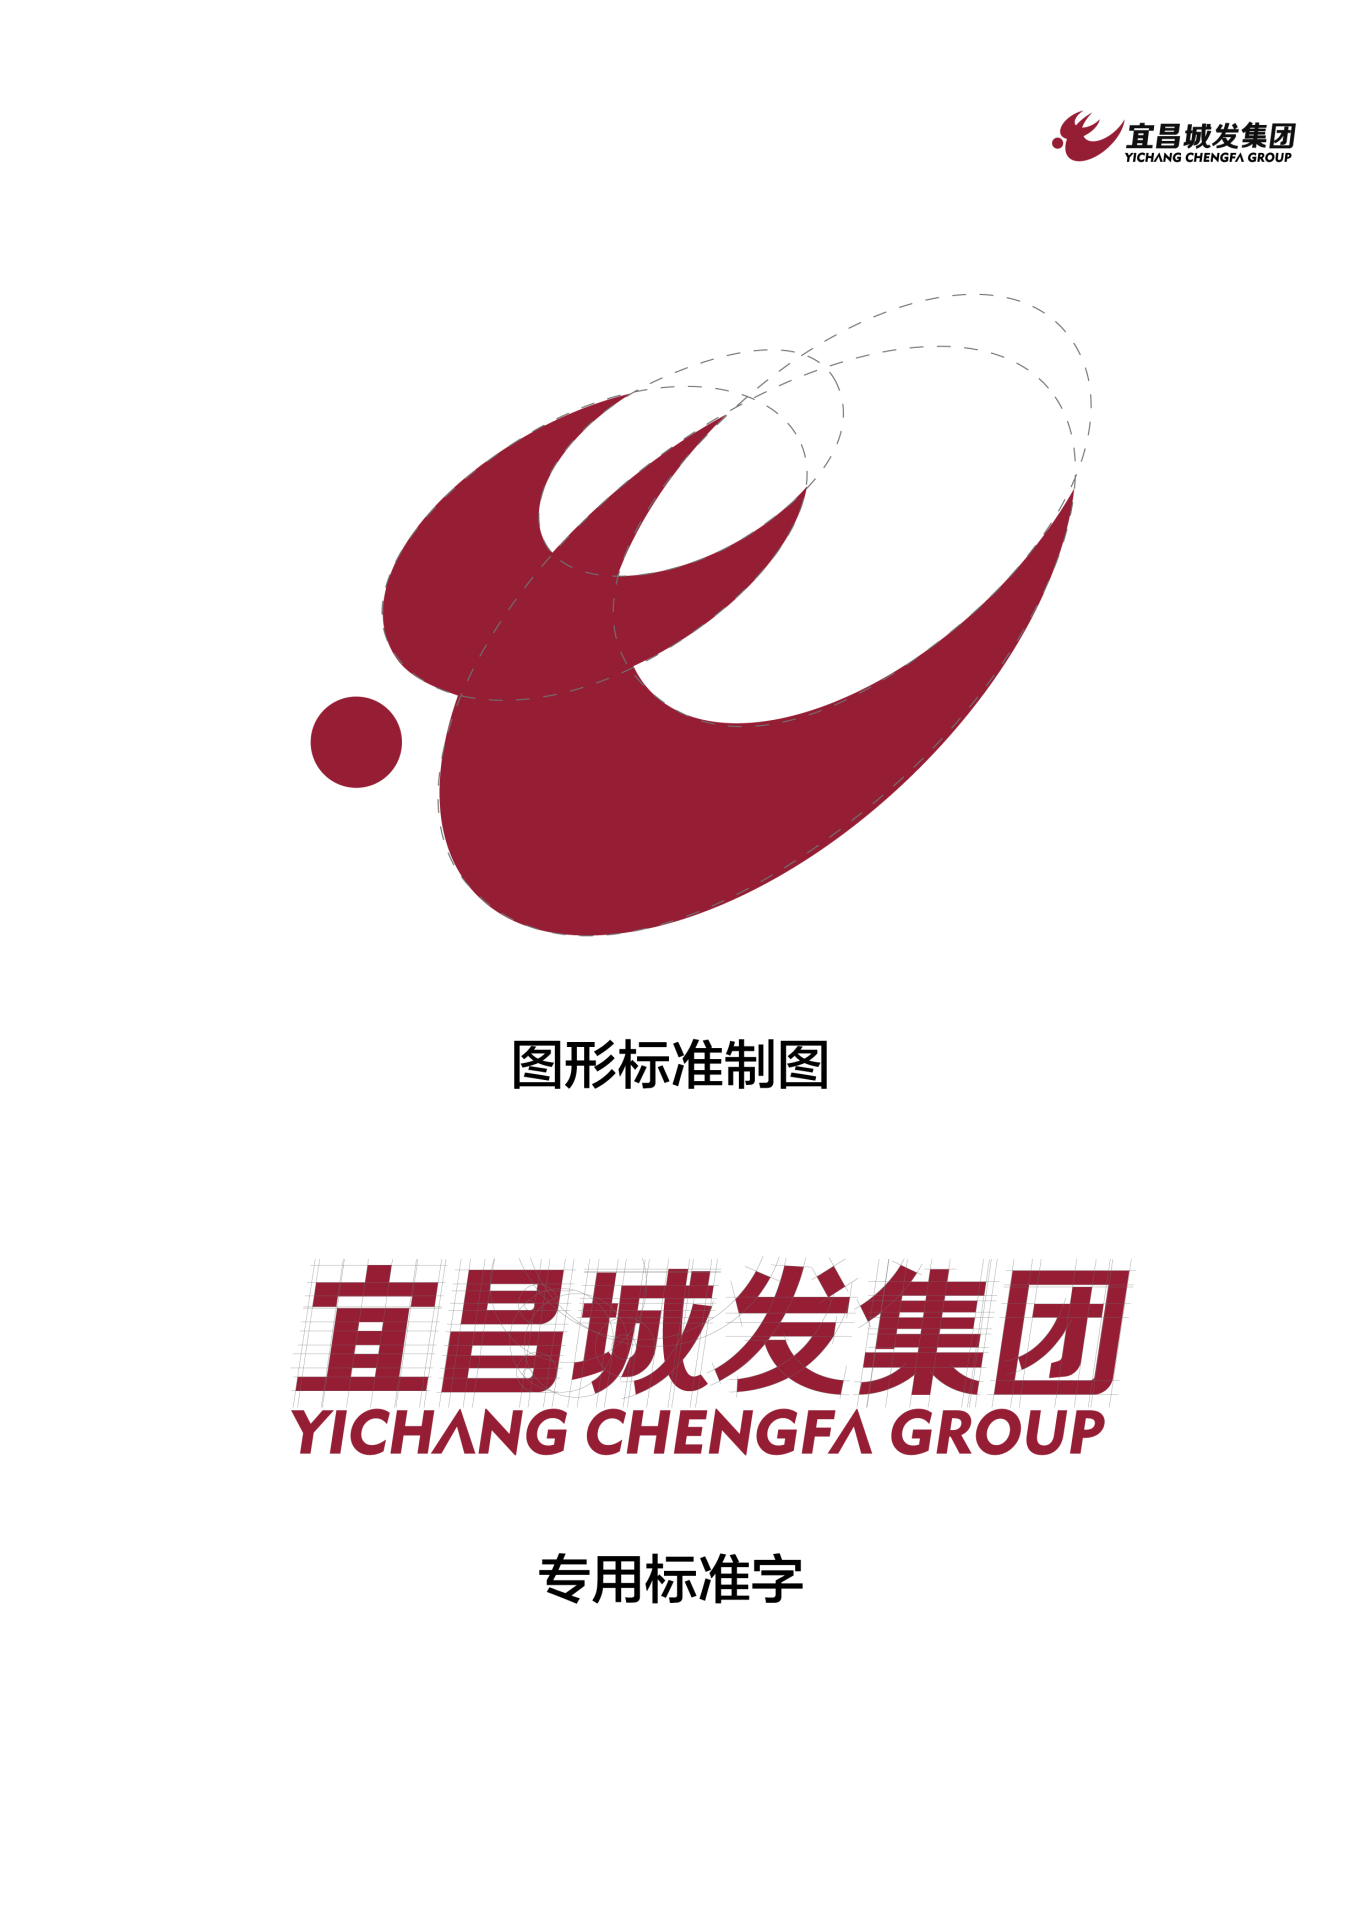 宜昌城发logo图1